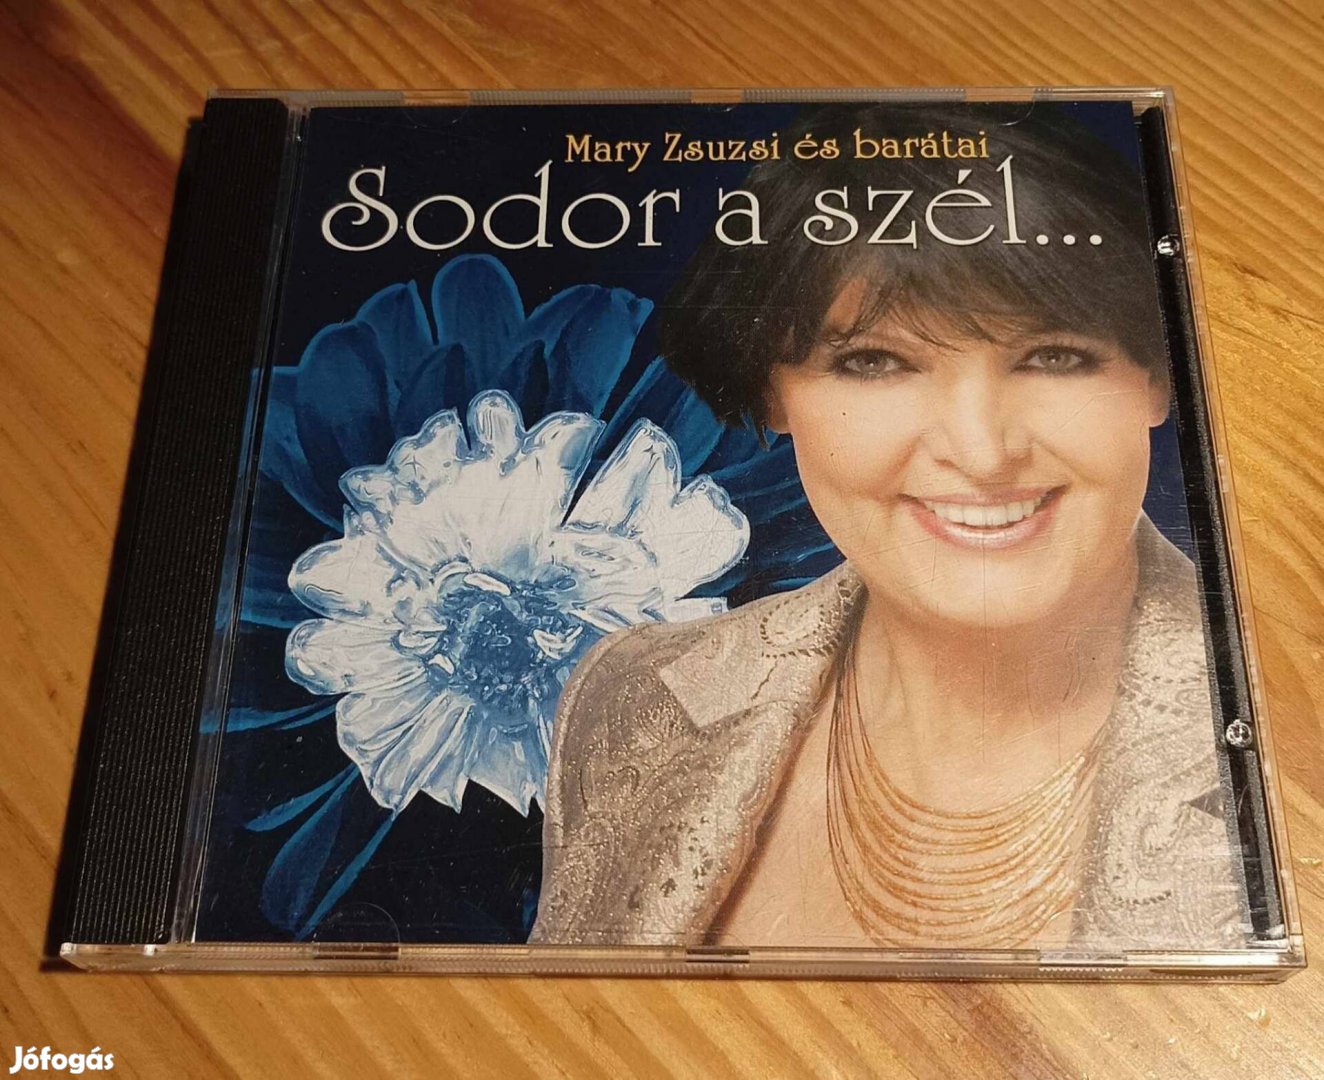 Mary Zsuzsi - Sodor a szél CD